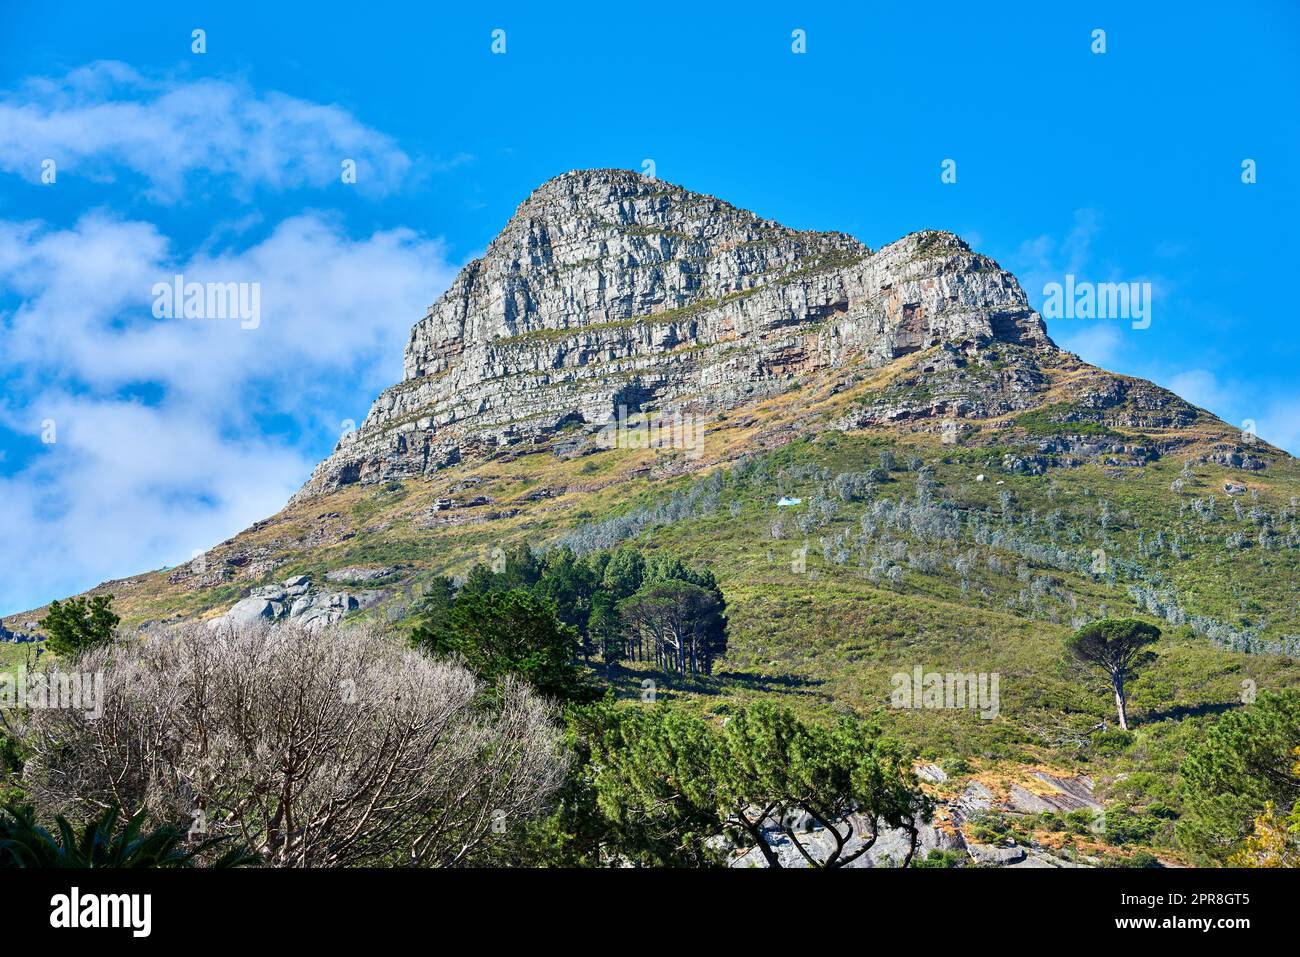 Copiez l'espace avec vue panoramique sur la montagne de Lions Head au Cap, en Afrique du Sud, sur fond bleu ciel. Magnifique vue panoramique d'une destination de voyage célèbre avec des arbres et des plantes luxuriants Banque D'Images